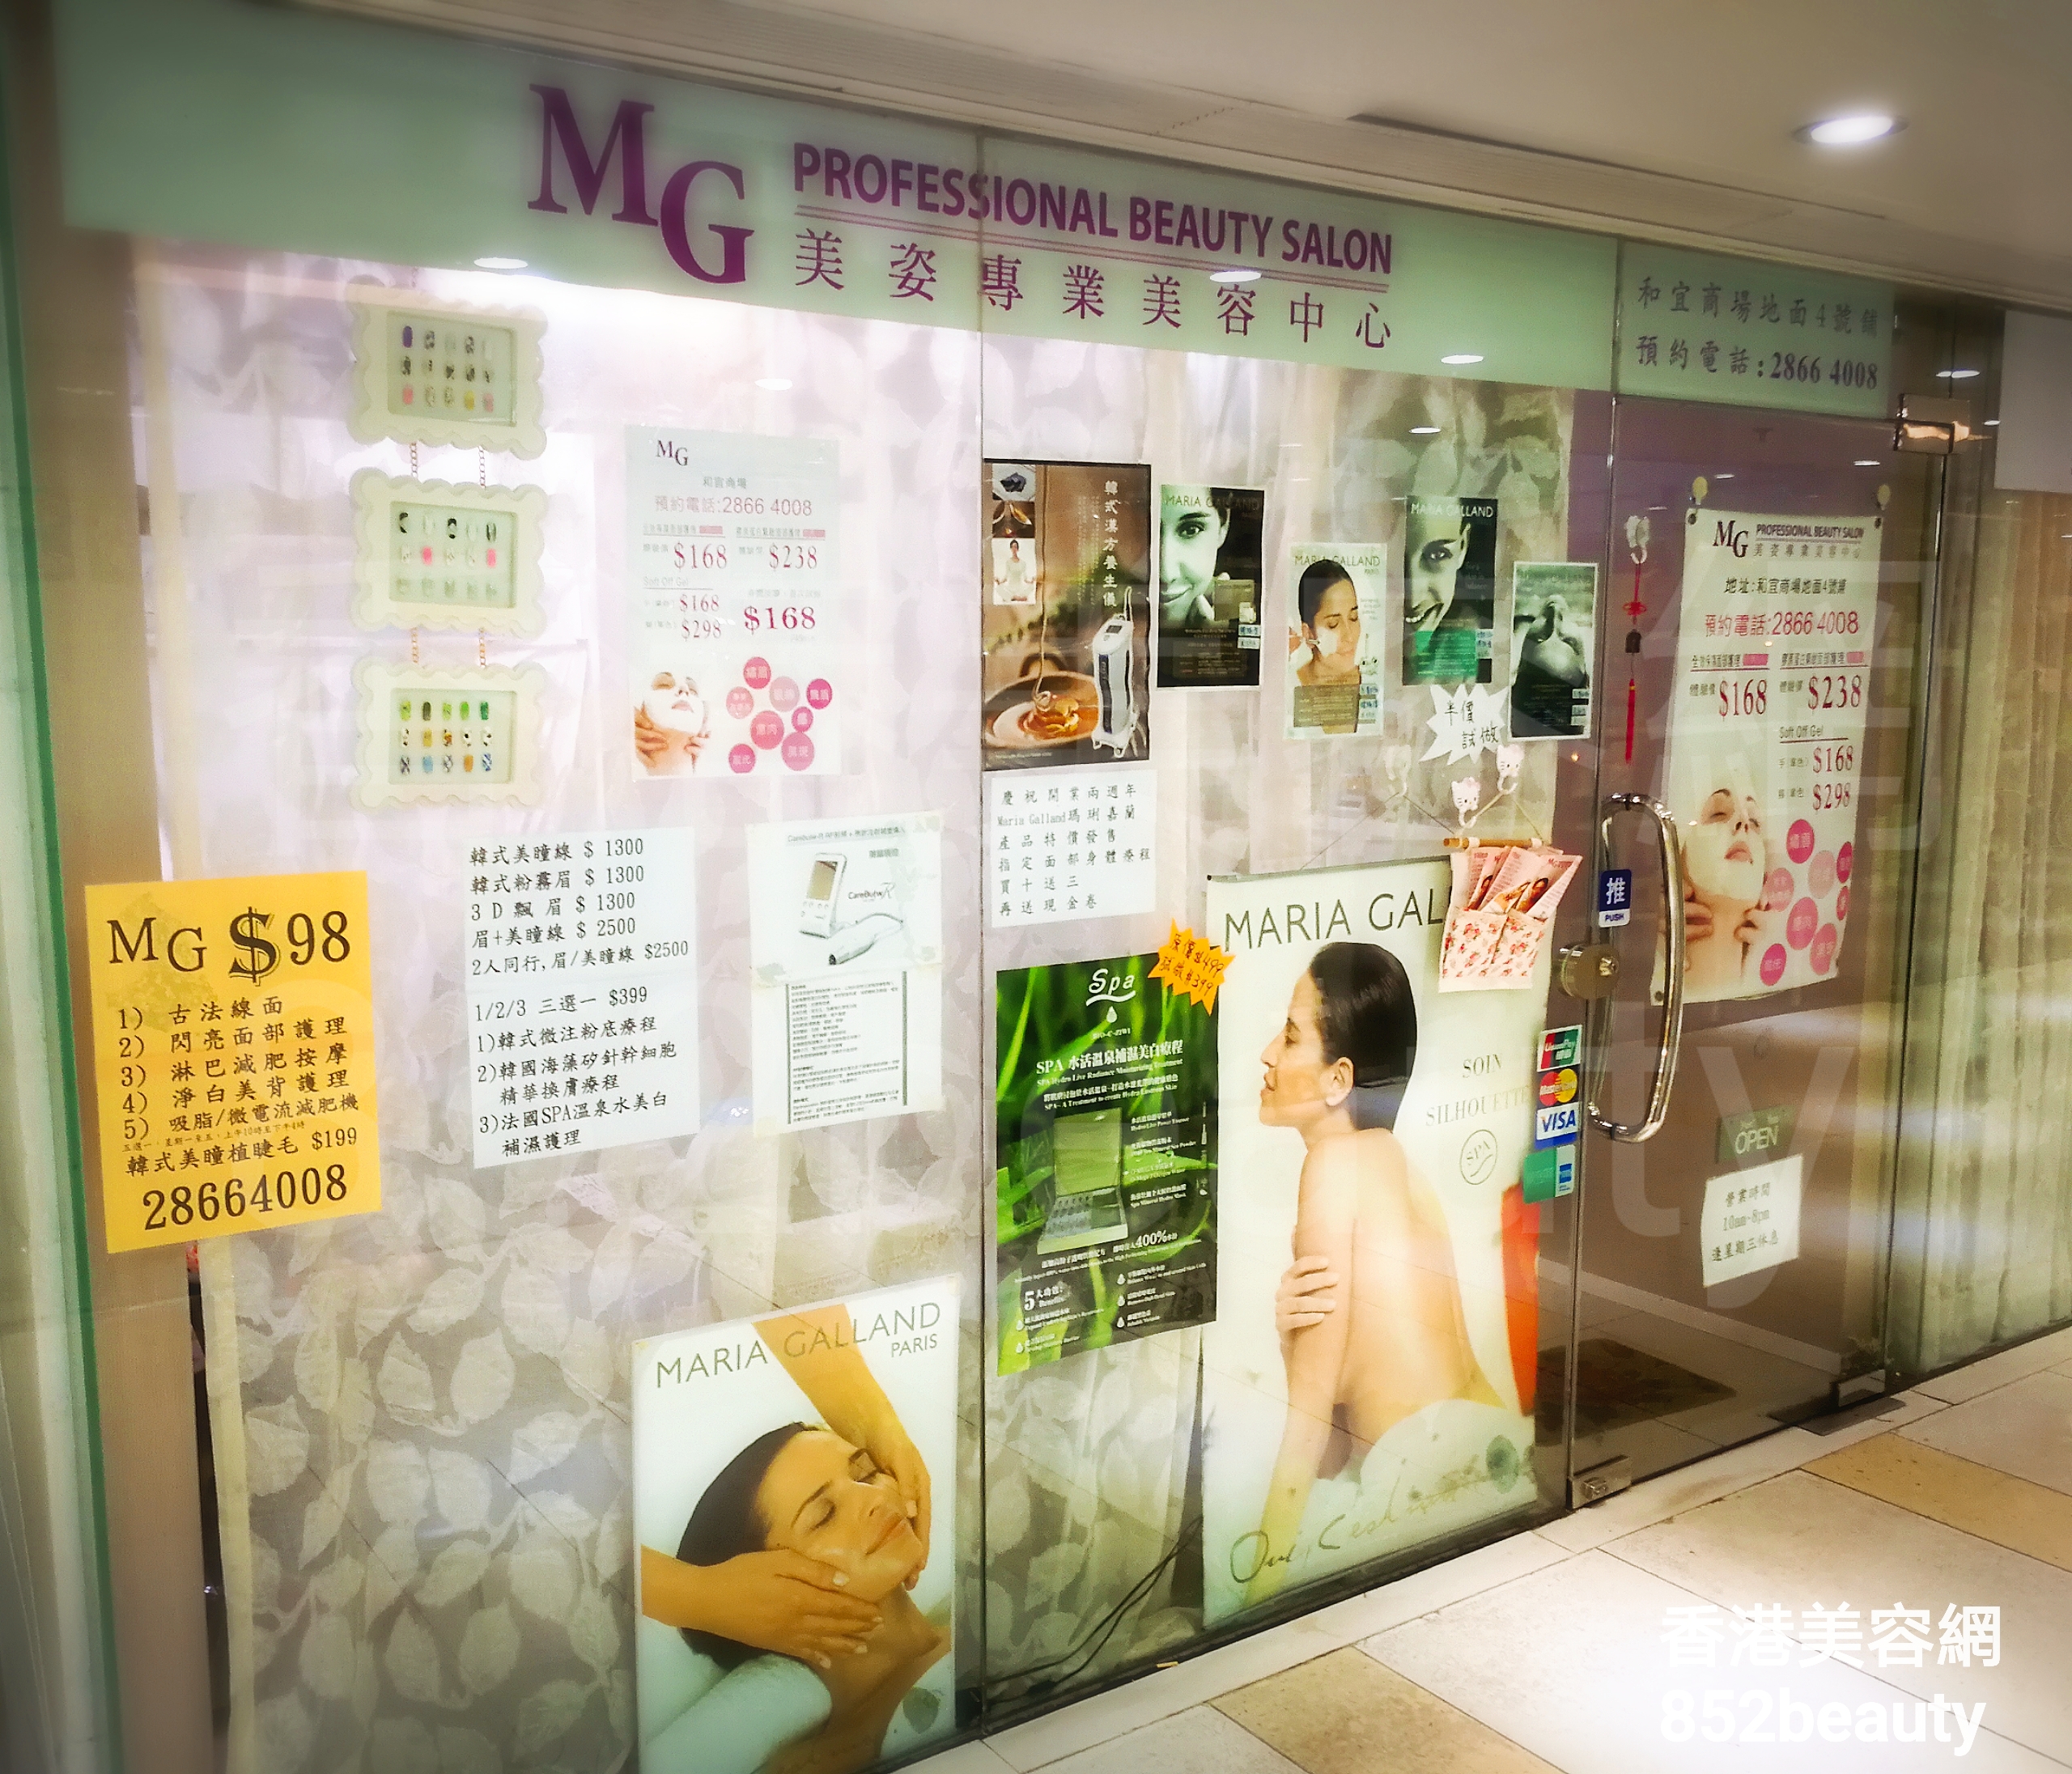 香港美容網 Hong Kong Beauty Salon 美容院 / 美容師: MG 美姿專業美容中心